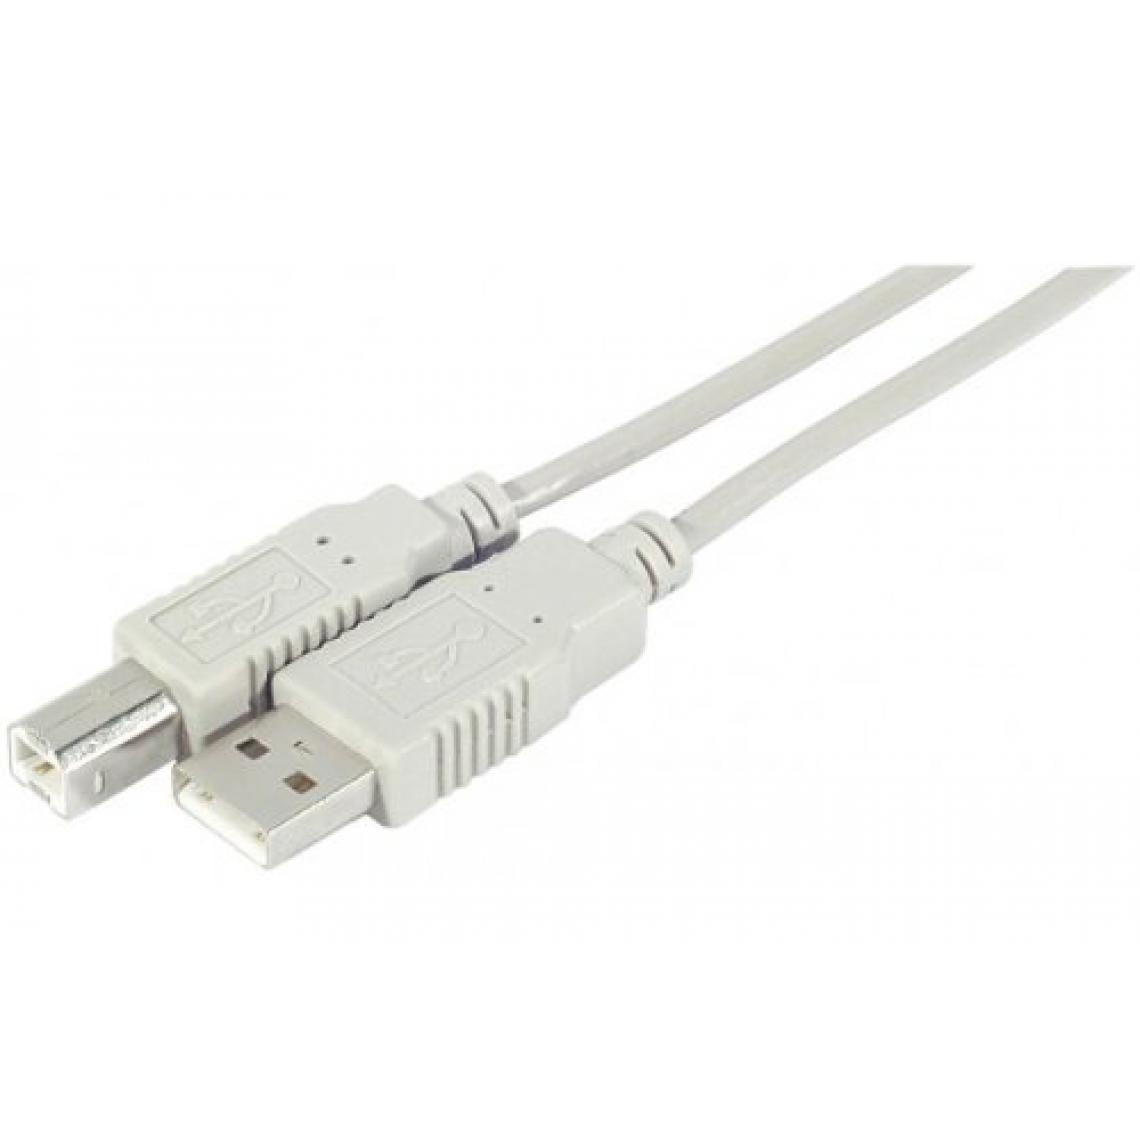 Ineck - INECK - Cable USB A-B M/M pour imprimante et scanner - Câble antenne